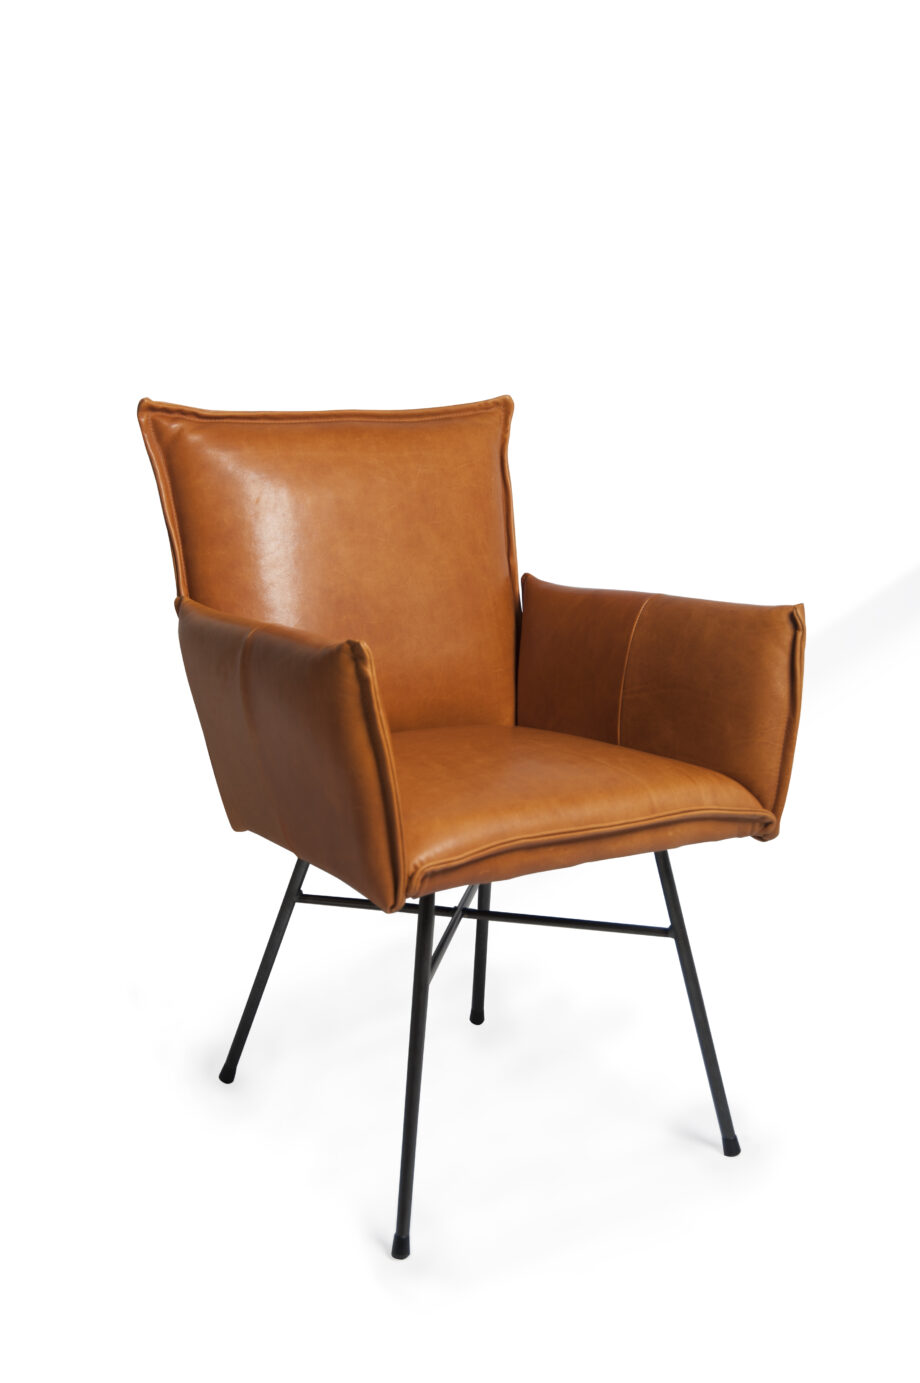 Sanne diningchair with arm Luxor cognac oblique 920x1383 - Jess Design - Spisestol - Sanne